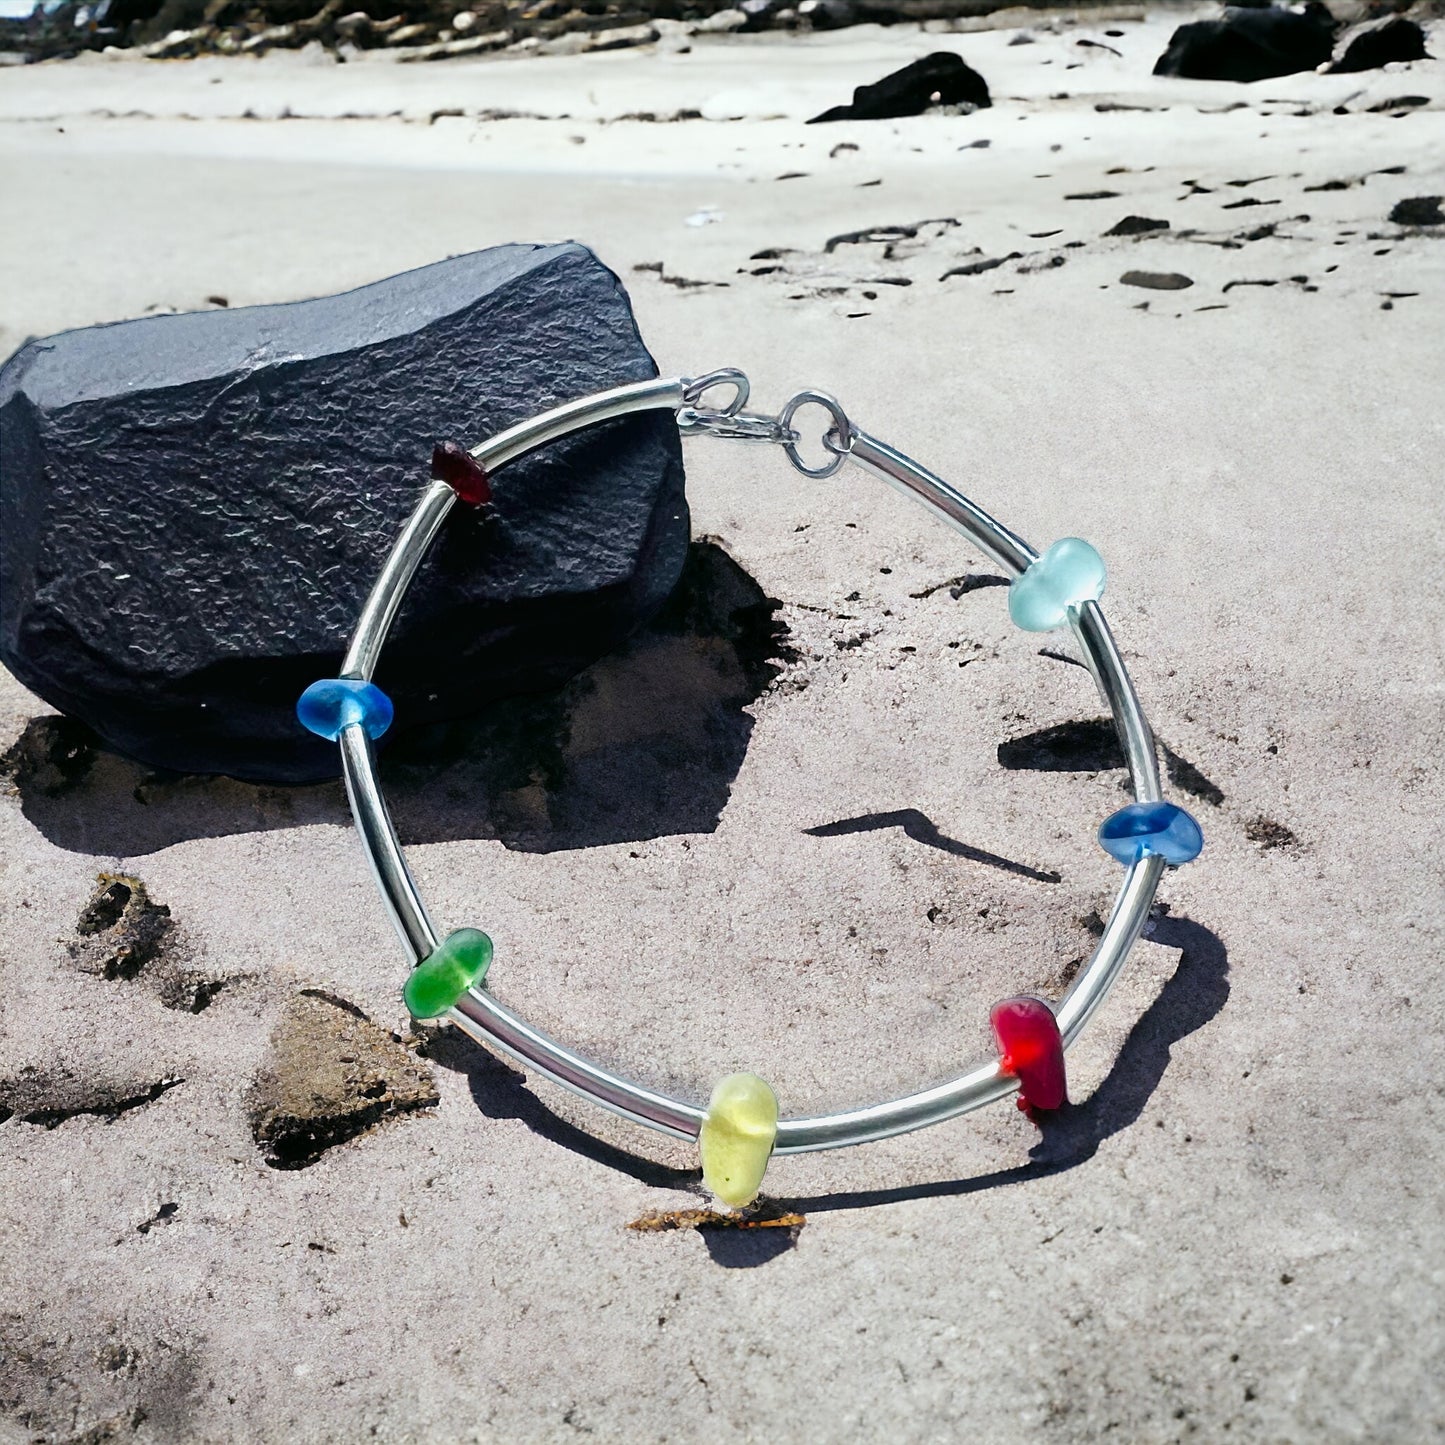 Seaham Sea Glass Bangle Bracelet